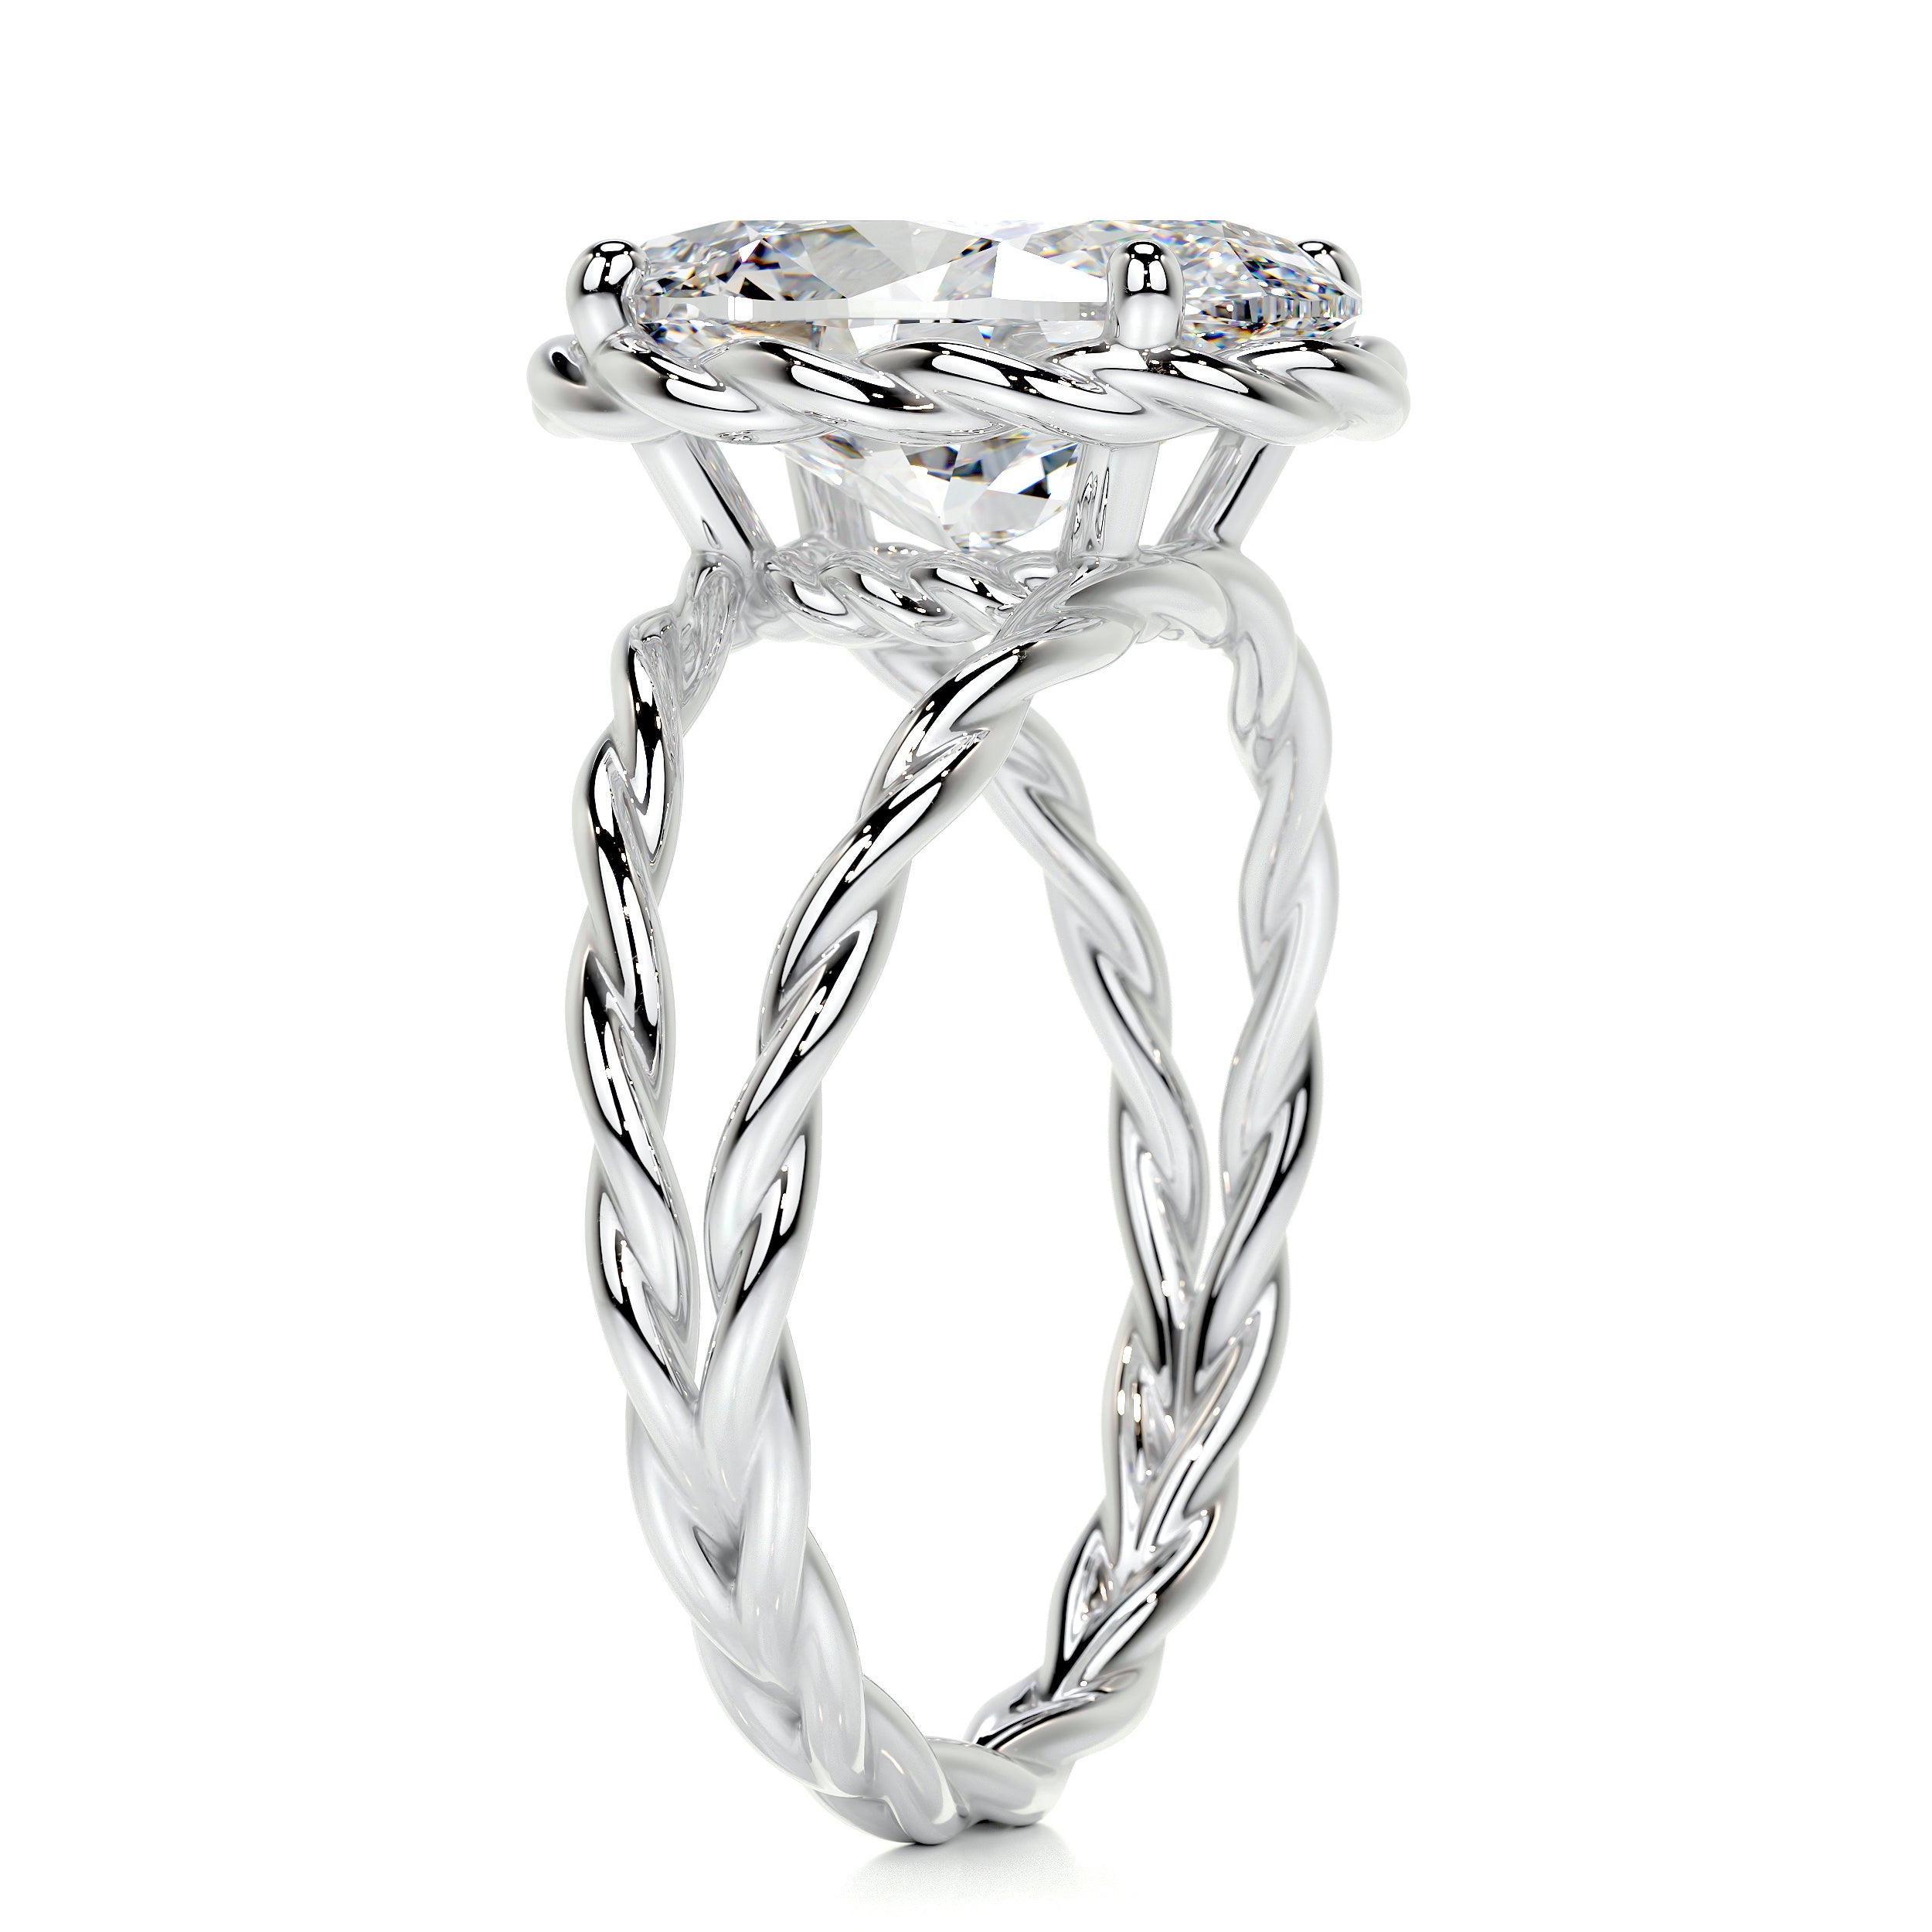 Milani Diamond Engagement Ring   (3 Carat) -18K White Gold